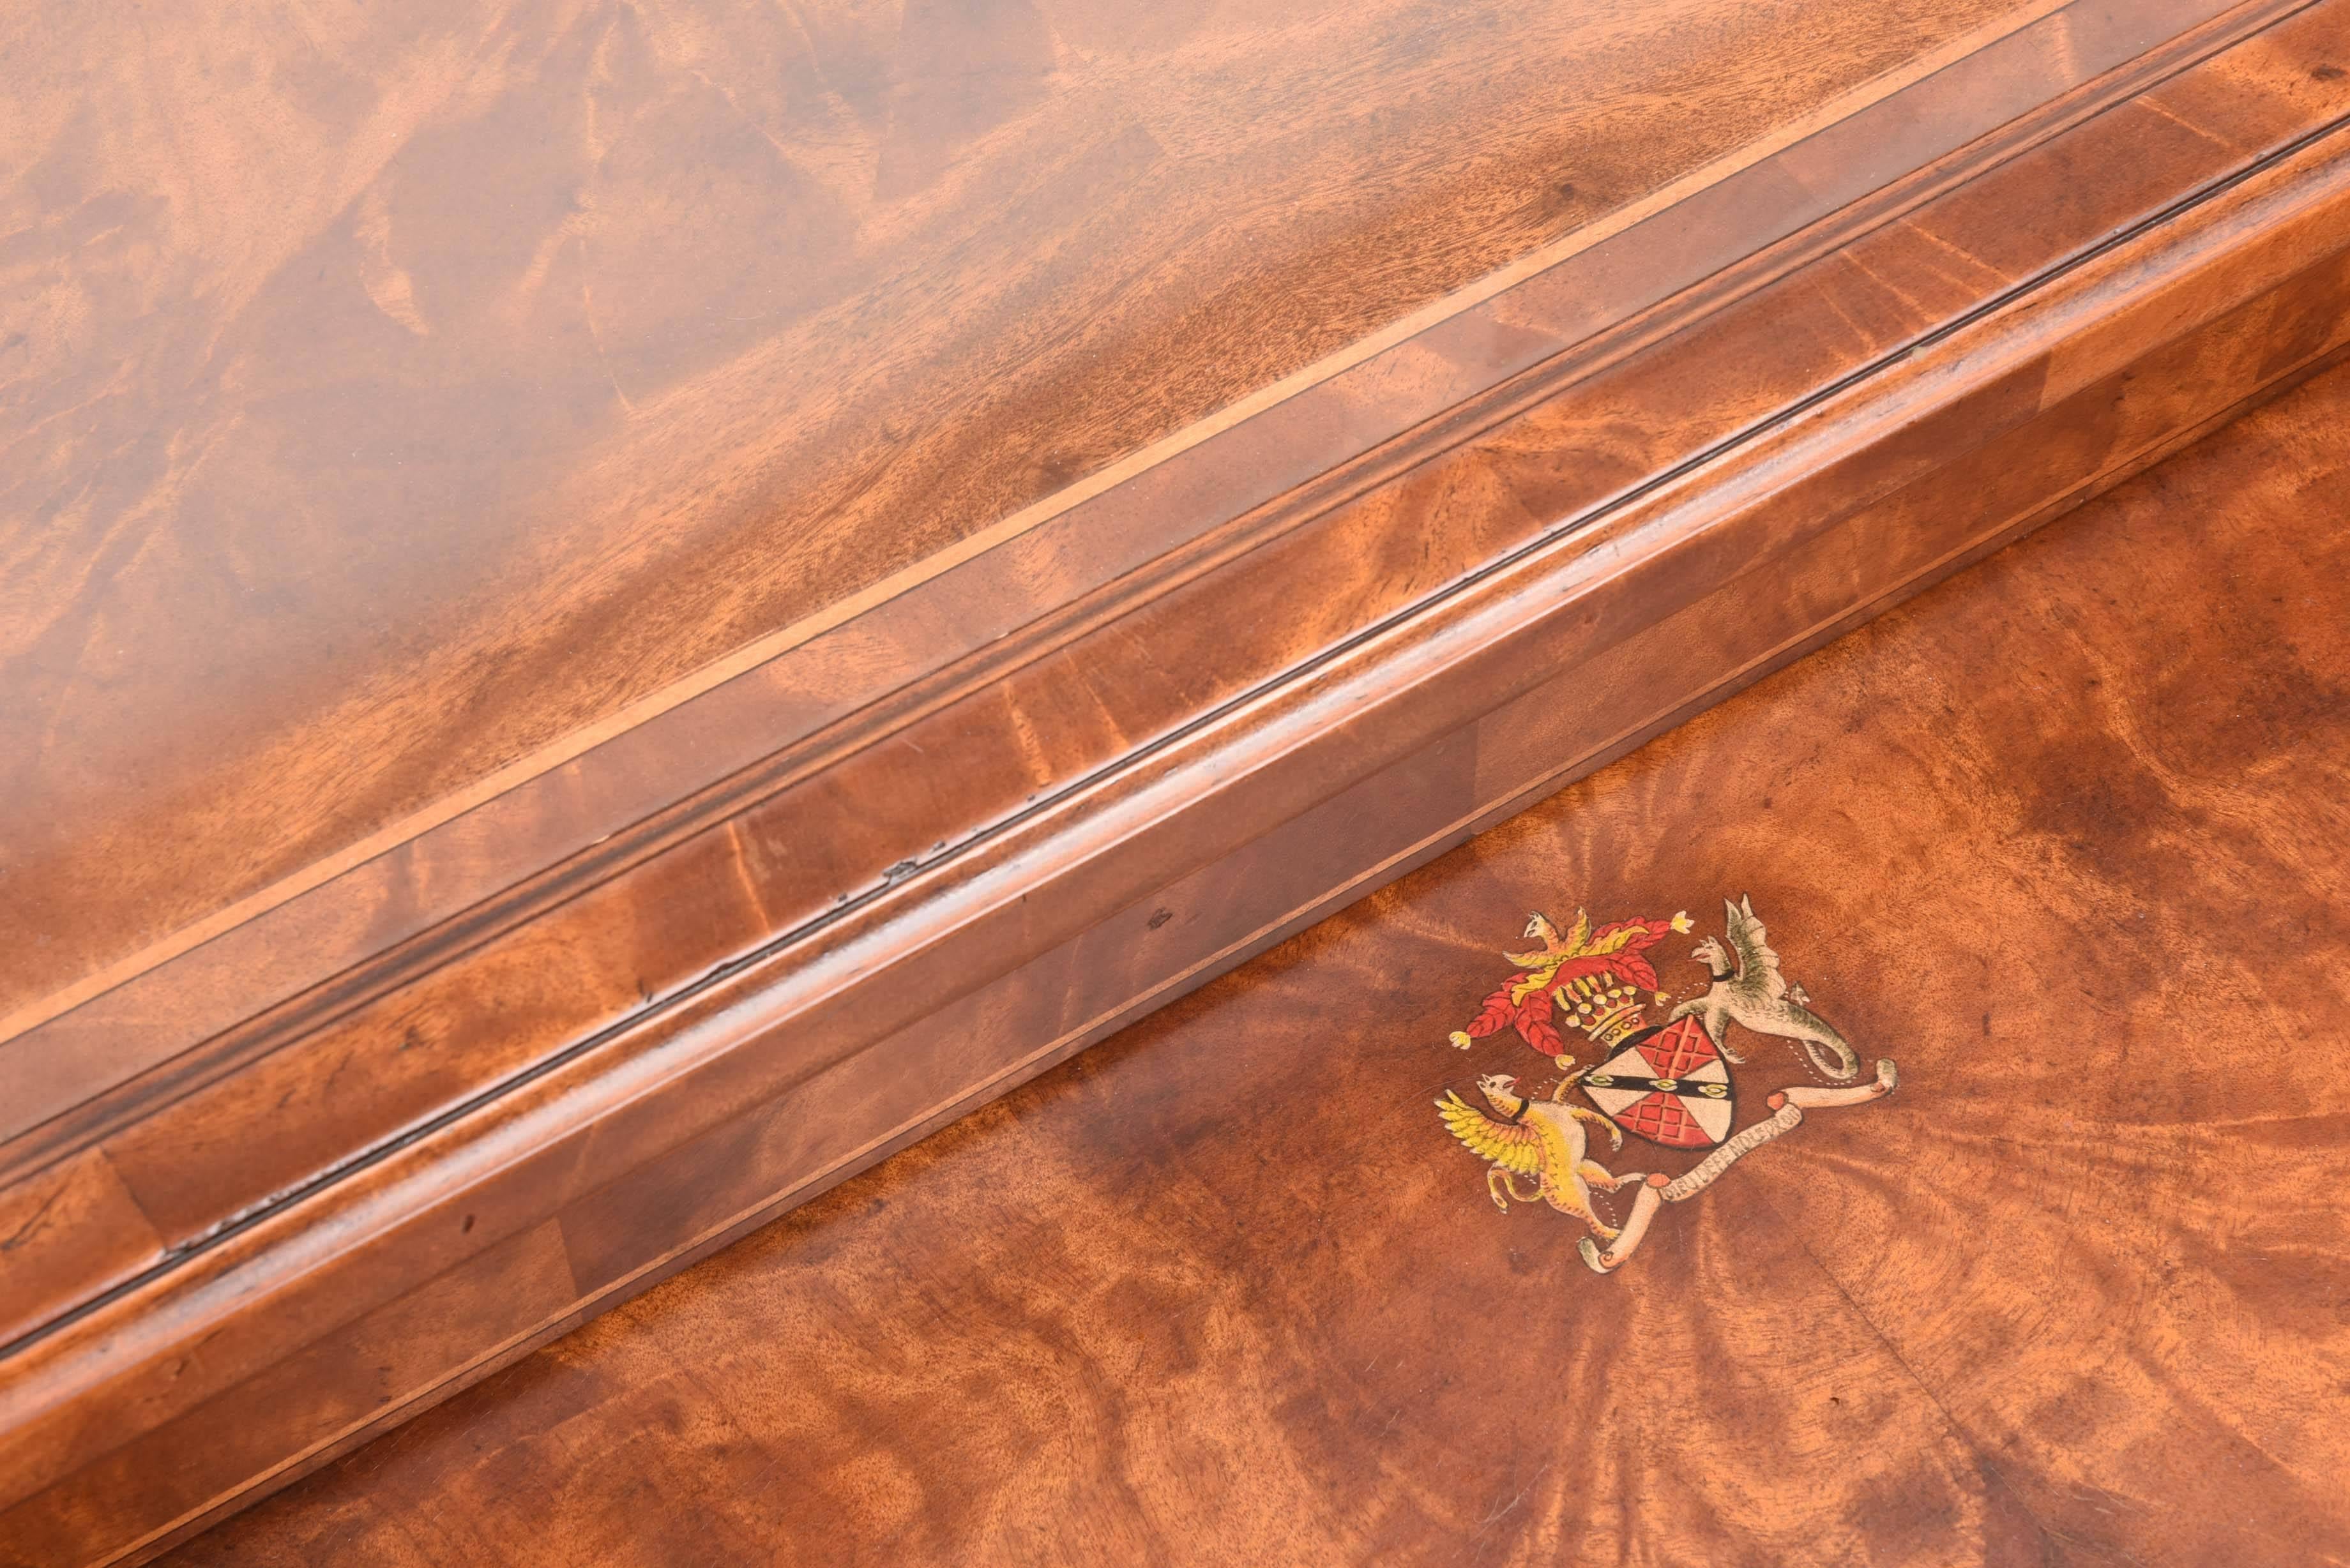 Auffällige Nisttische im neoklassischen Stil mit abnehmbarer Glasplatte von Theodore Alexander. Griffe, Füße und Zierleisten aus ziselierter Bronze. Wappenmotiv auf kleinerem Tisch. Eine wunderbare Ergänzung für jeden Wohnbereich.